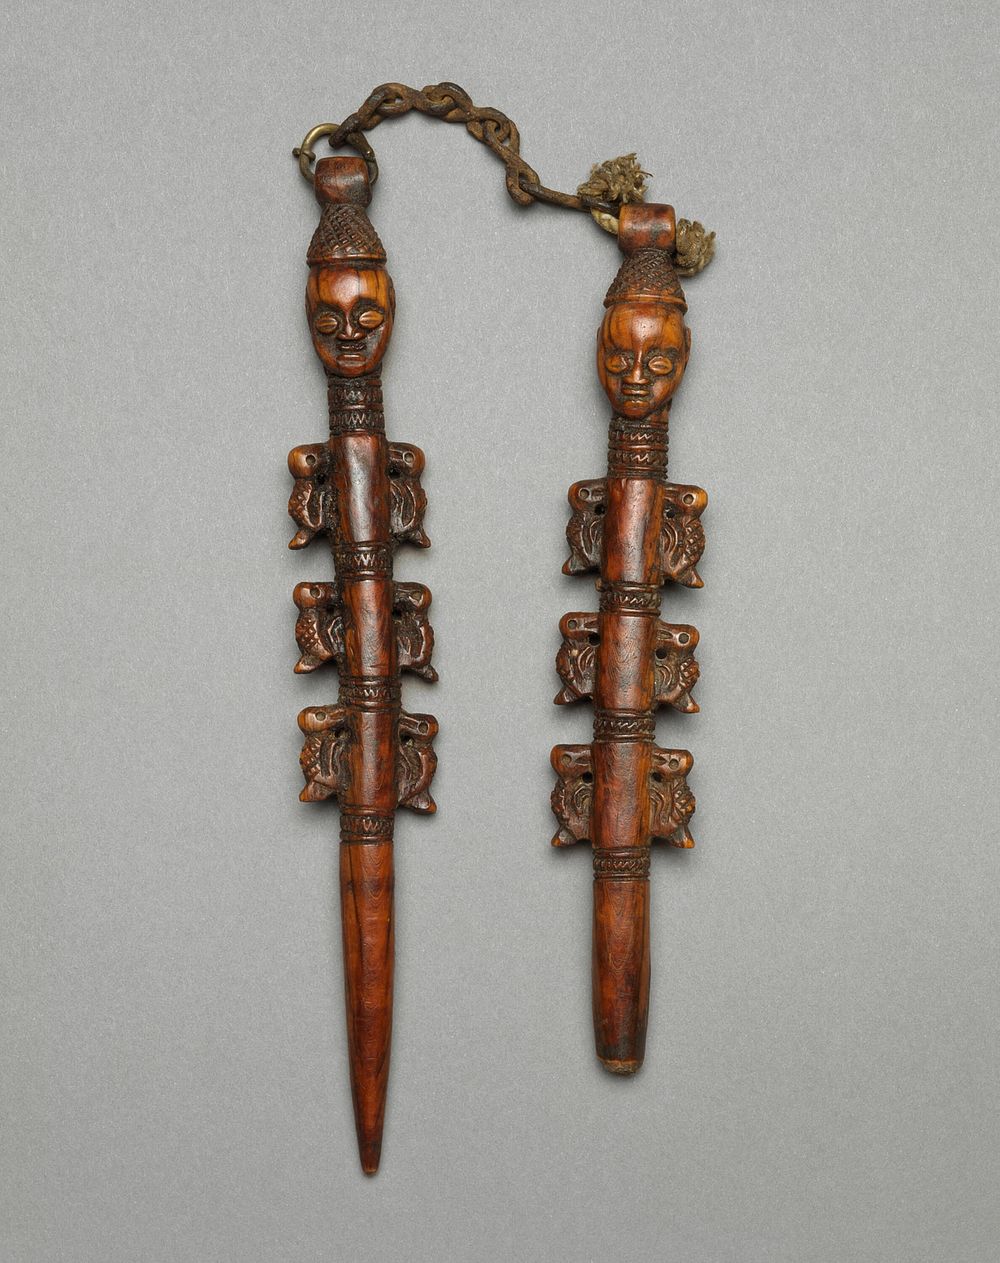 Pair of Staffs (Edan) by Yoruba